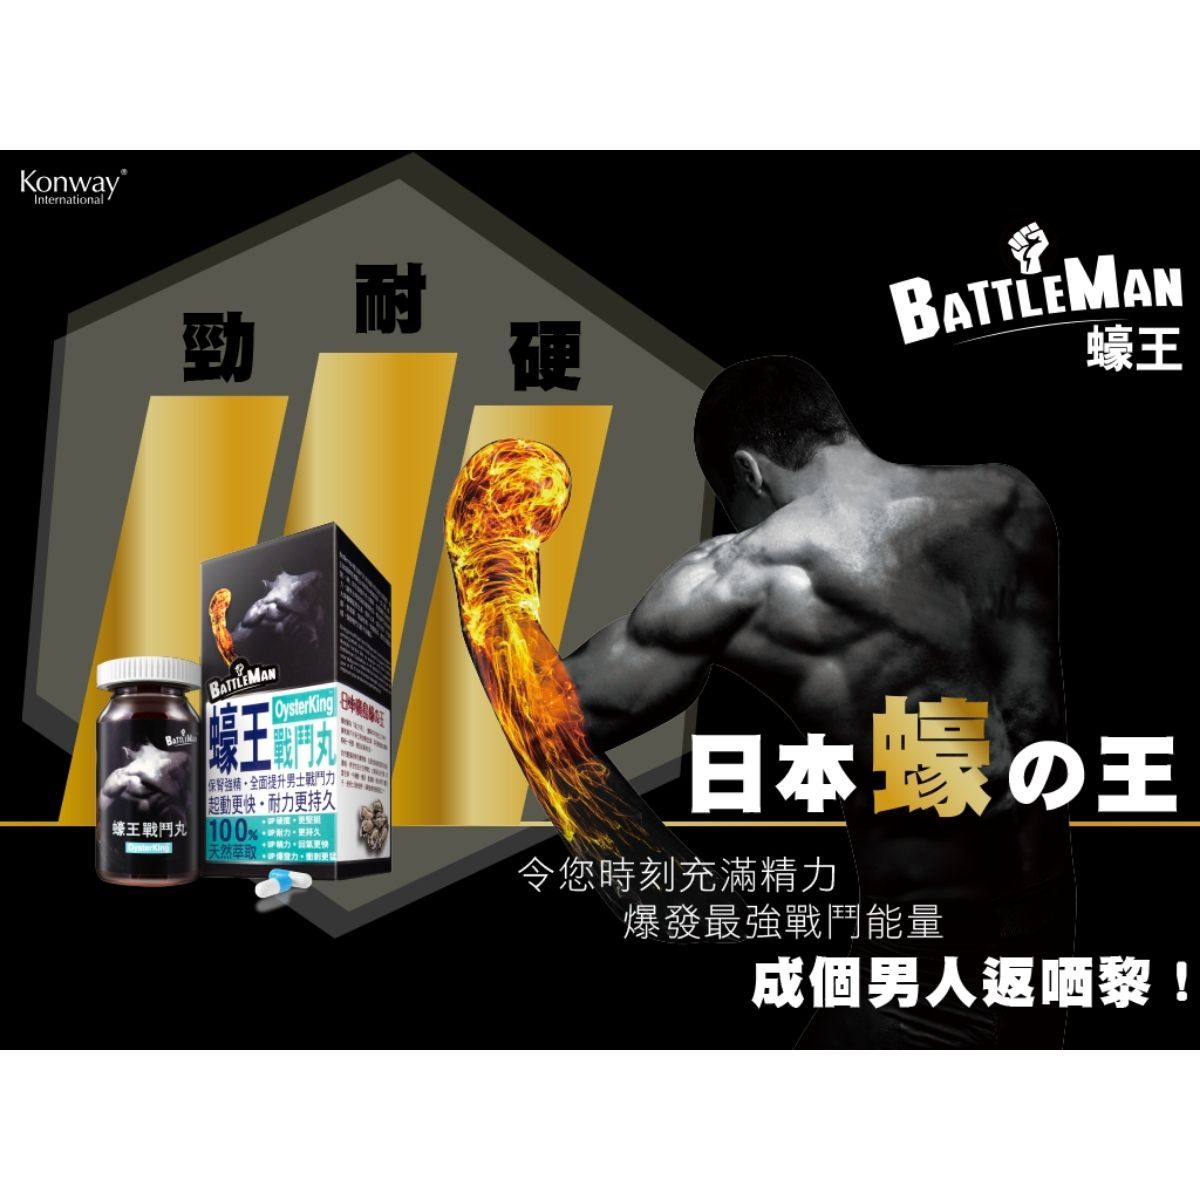 BATTLE MAN 蠔王戰鬥丸 30 粒 X 3 件 優惠套裝 購買